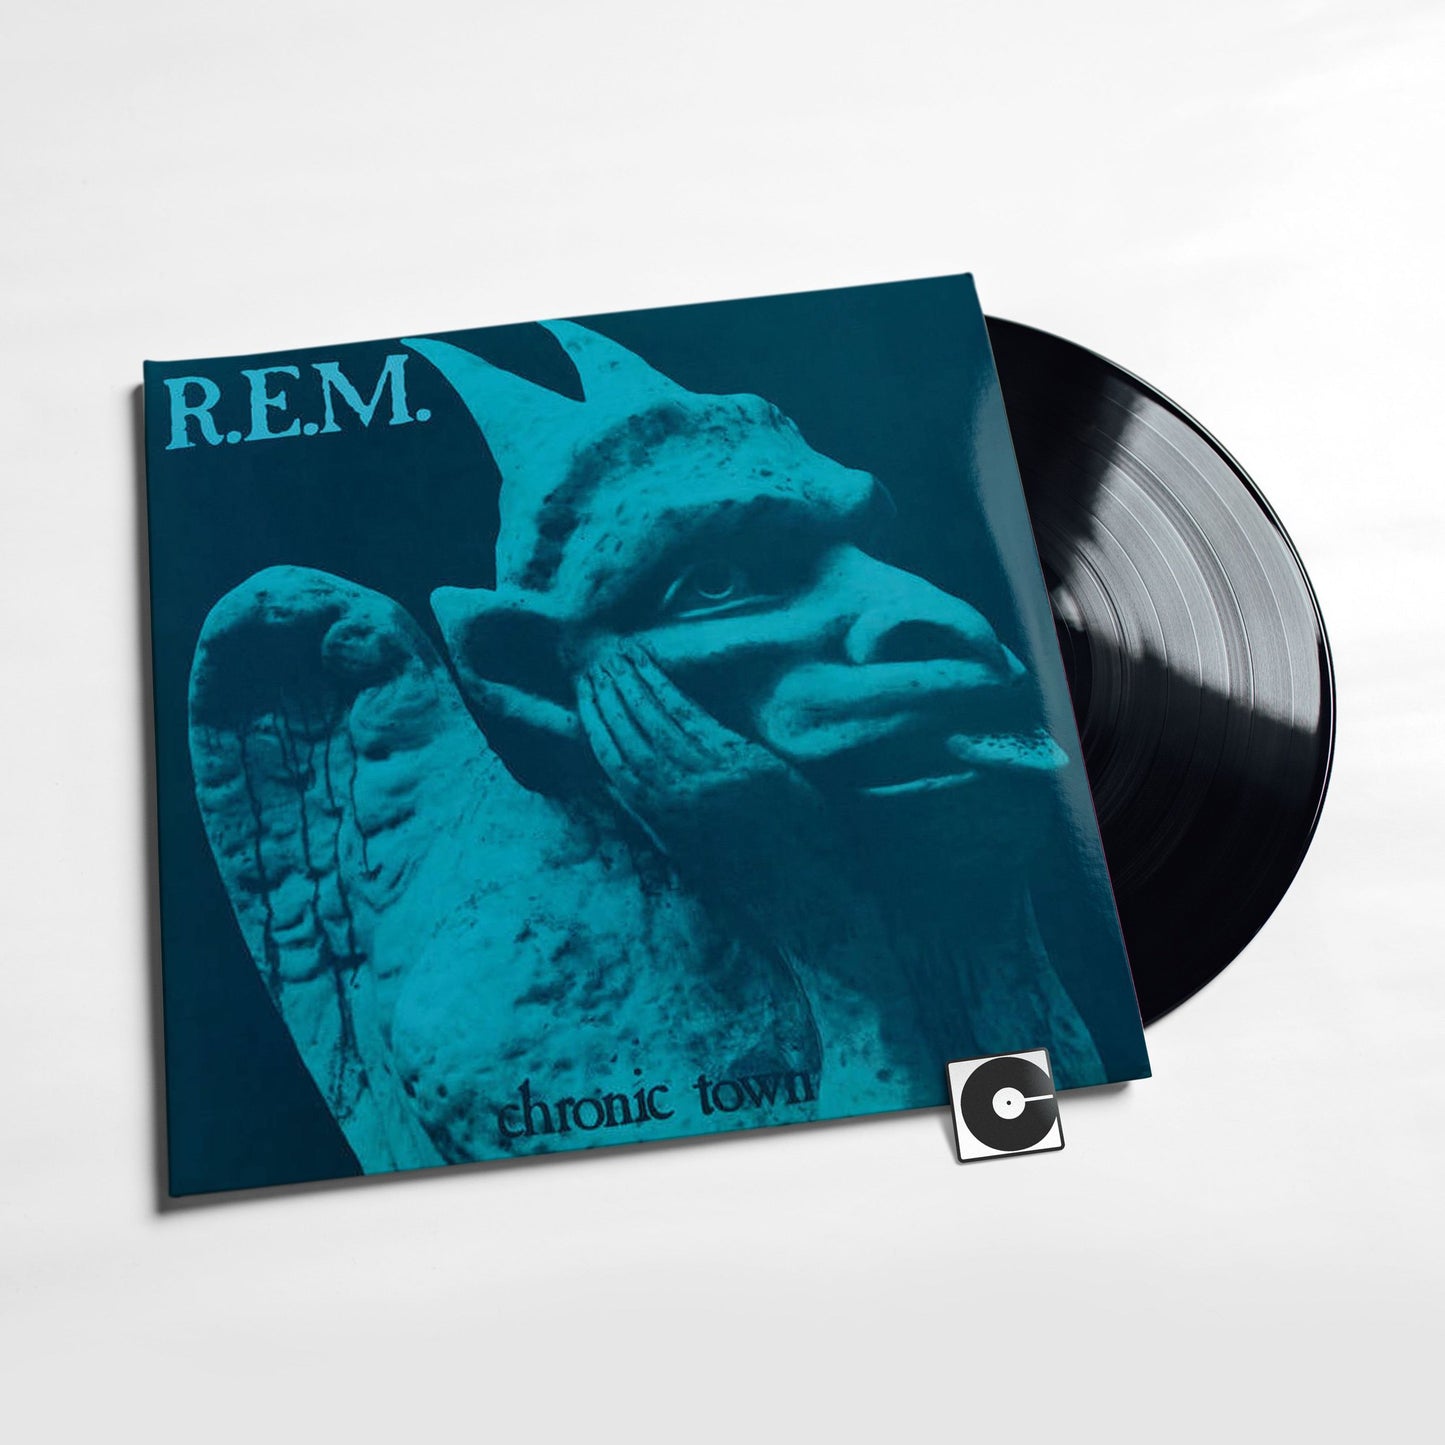 R.E.M. - "Chronic Town"